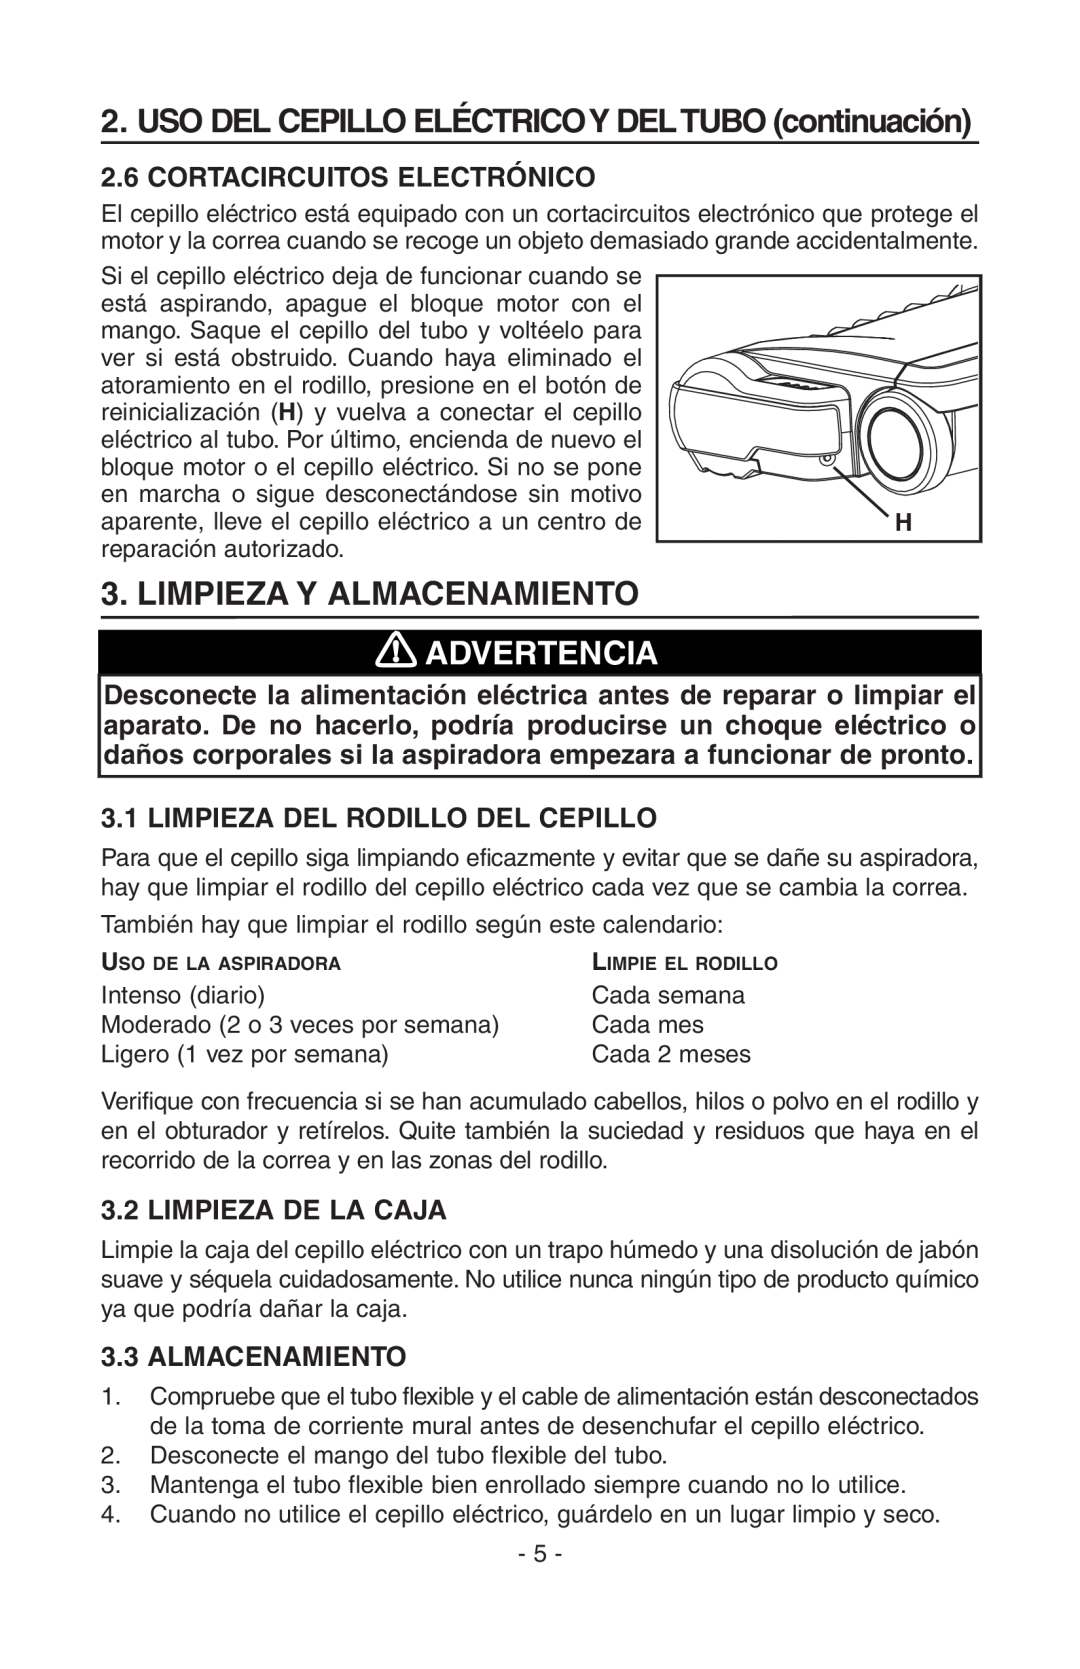 NuTone AB0008, CT700 Limpieza Y Almacenamiento, Advertencia, Cortacircuitos Electrónico, Limpieza Del Rodillo Del Cepillo 